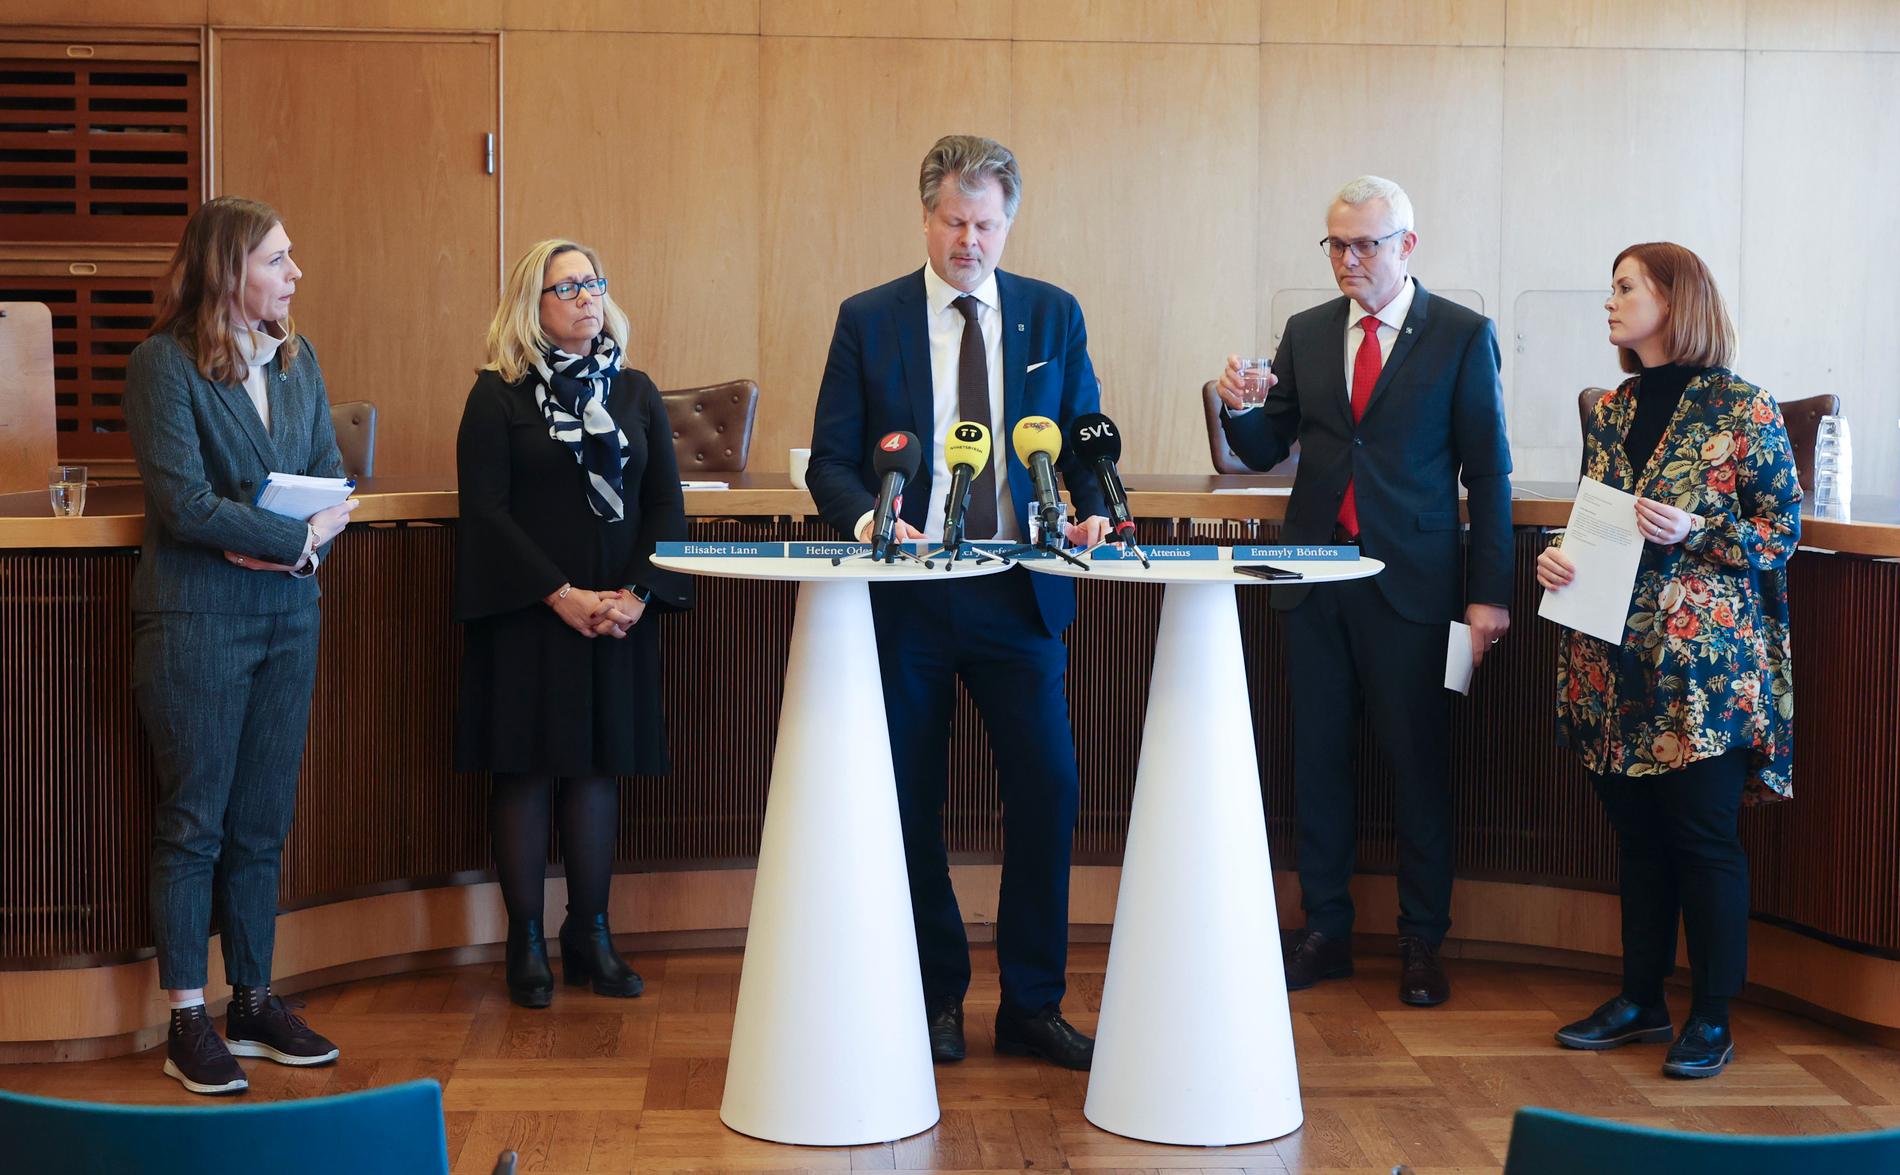 Elisabet Lann (KD), Helene Odenjung (L), Axel Josefsson (M), Jonas Attenius (S) och Emmely Bönfors (C) under en pressträff med anledning av covid-19.